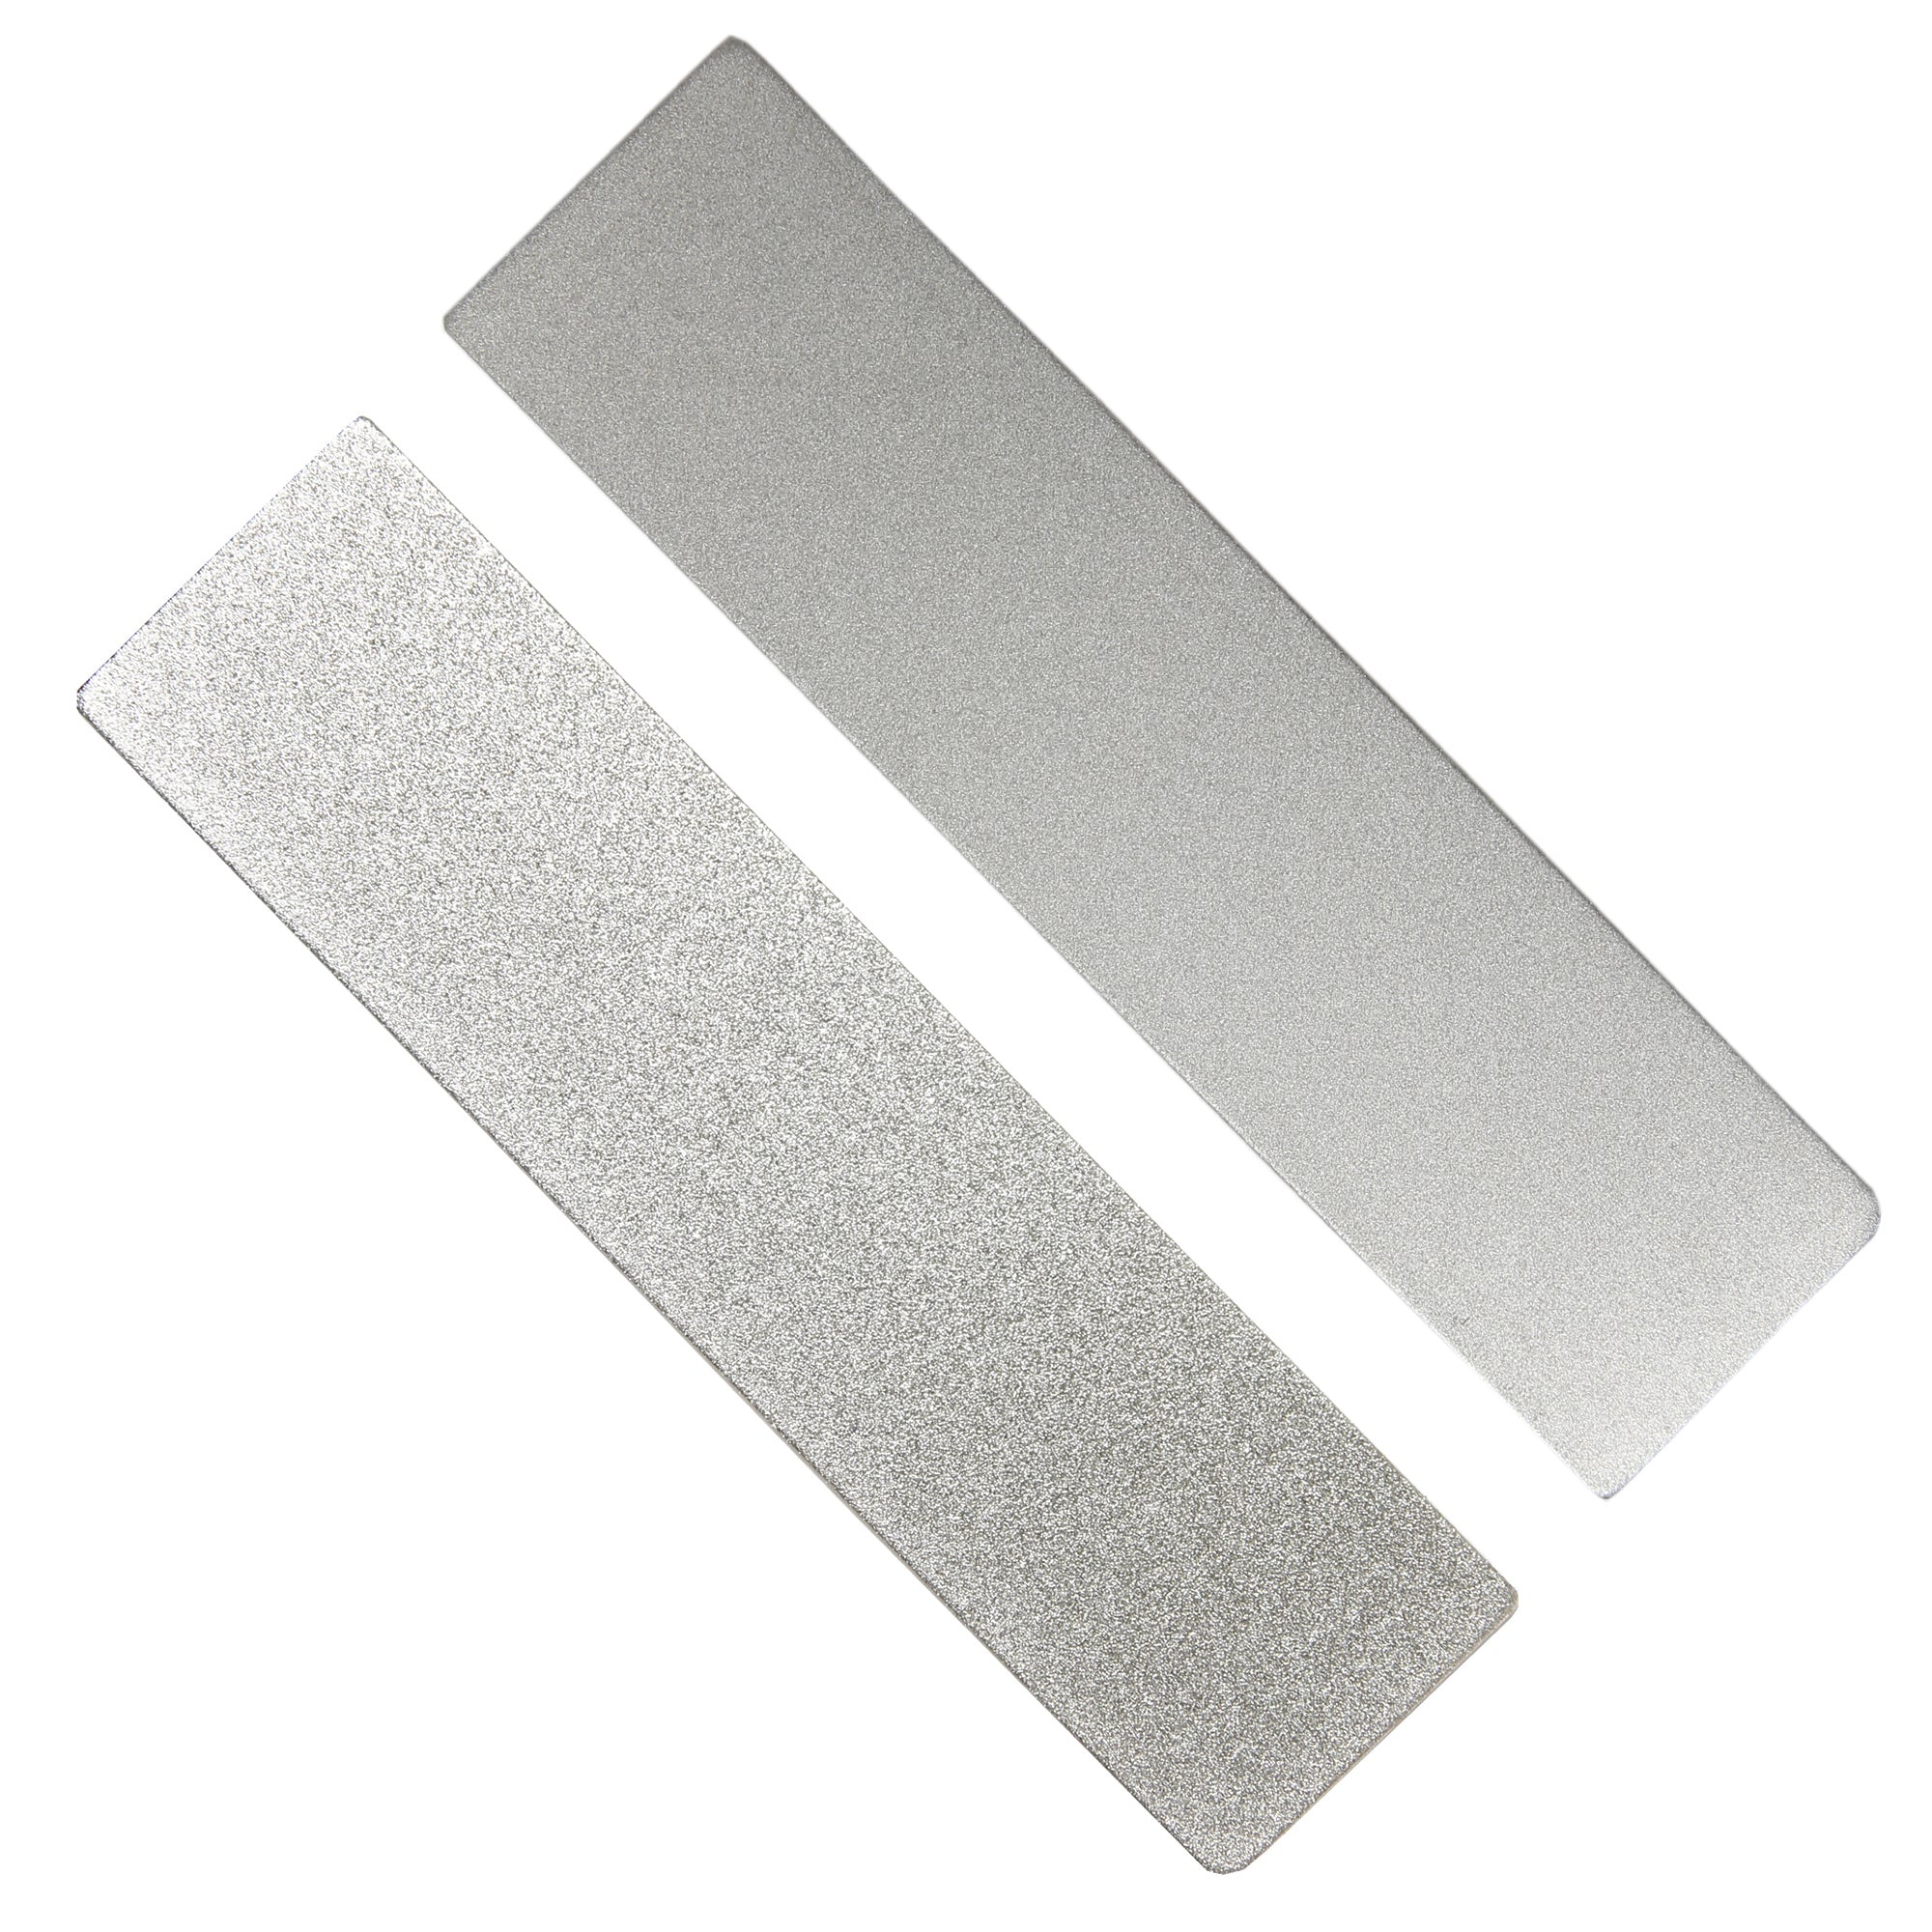 Diamond Plate Kit - Guided Field Sharpener